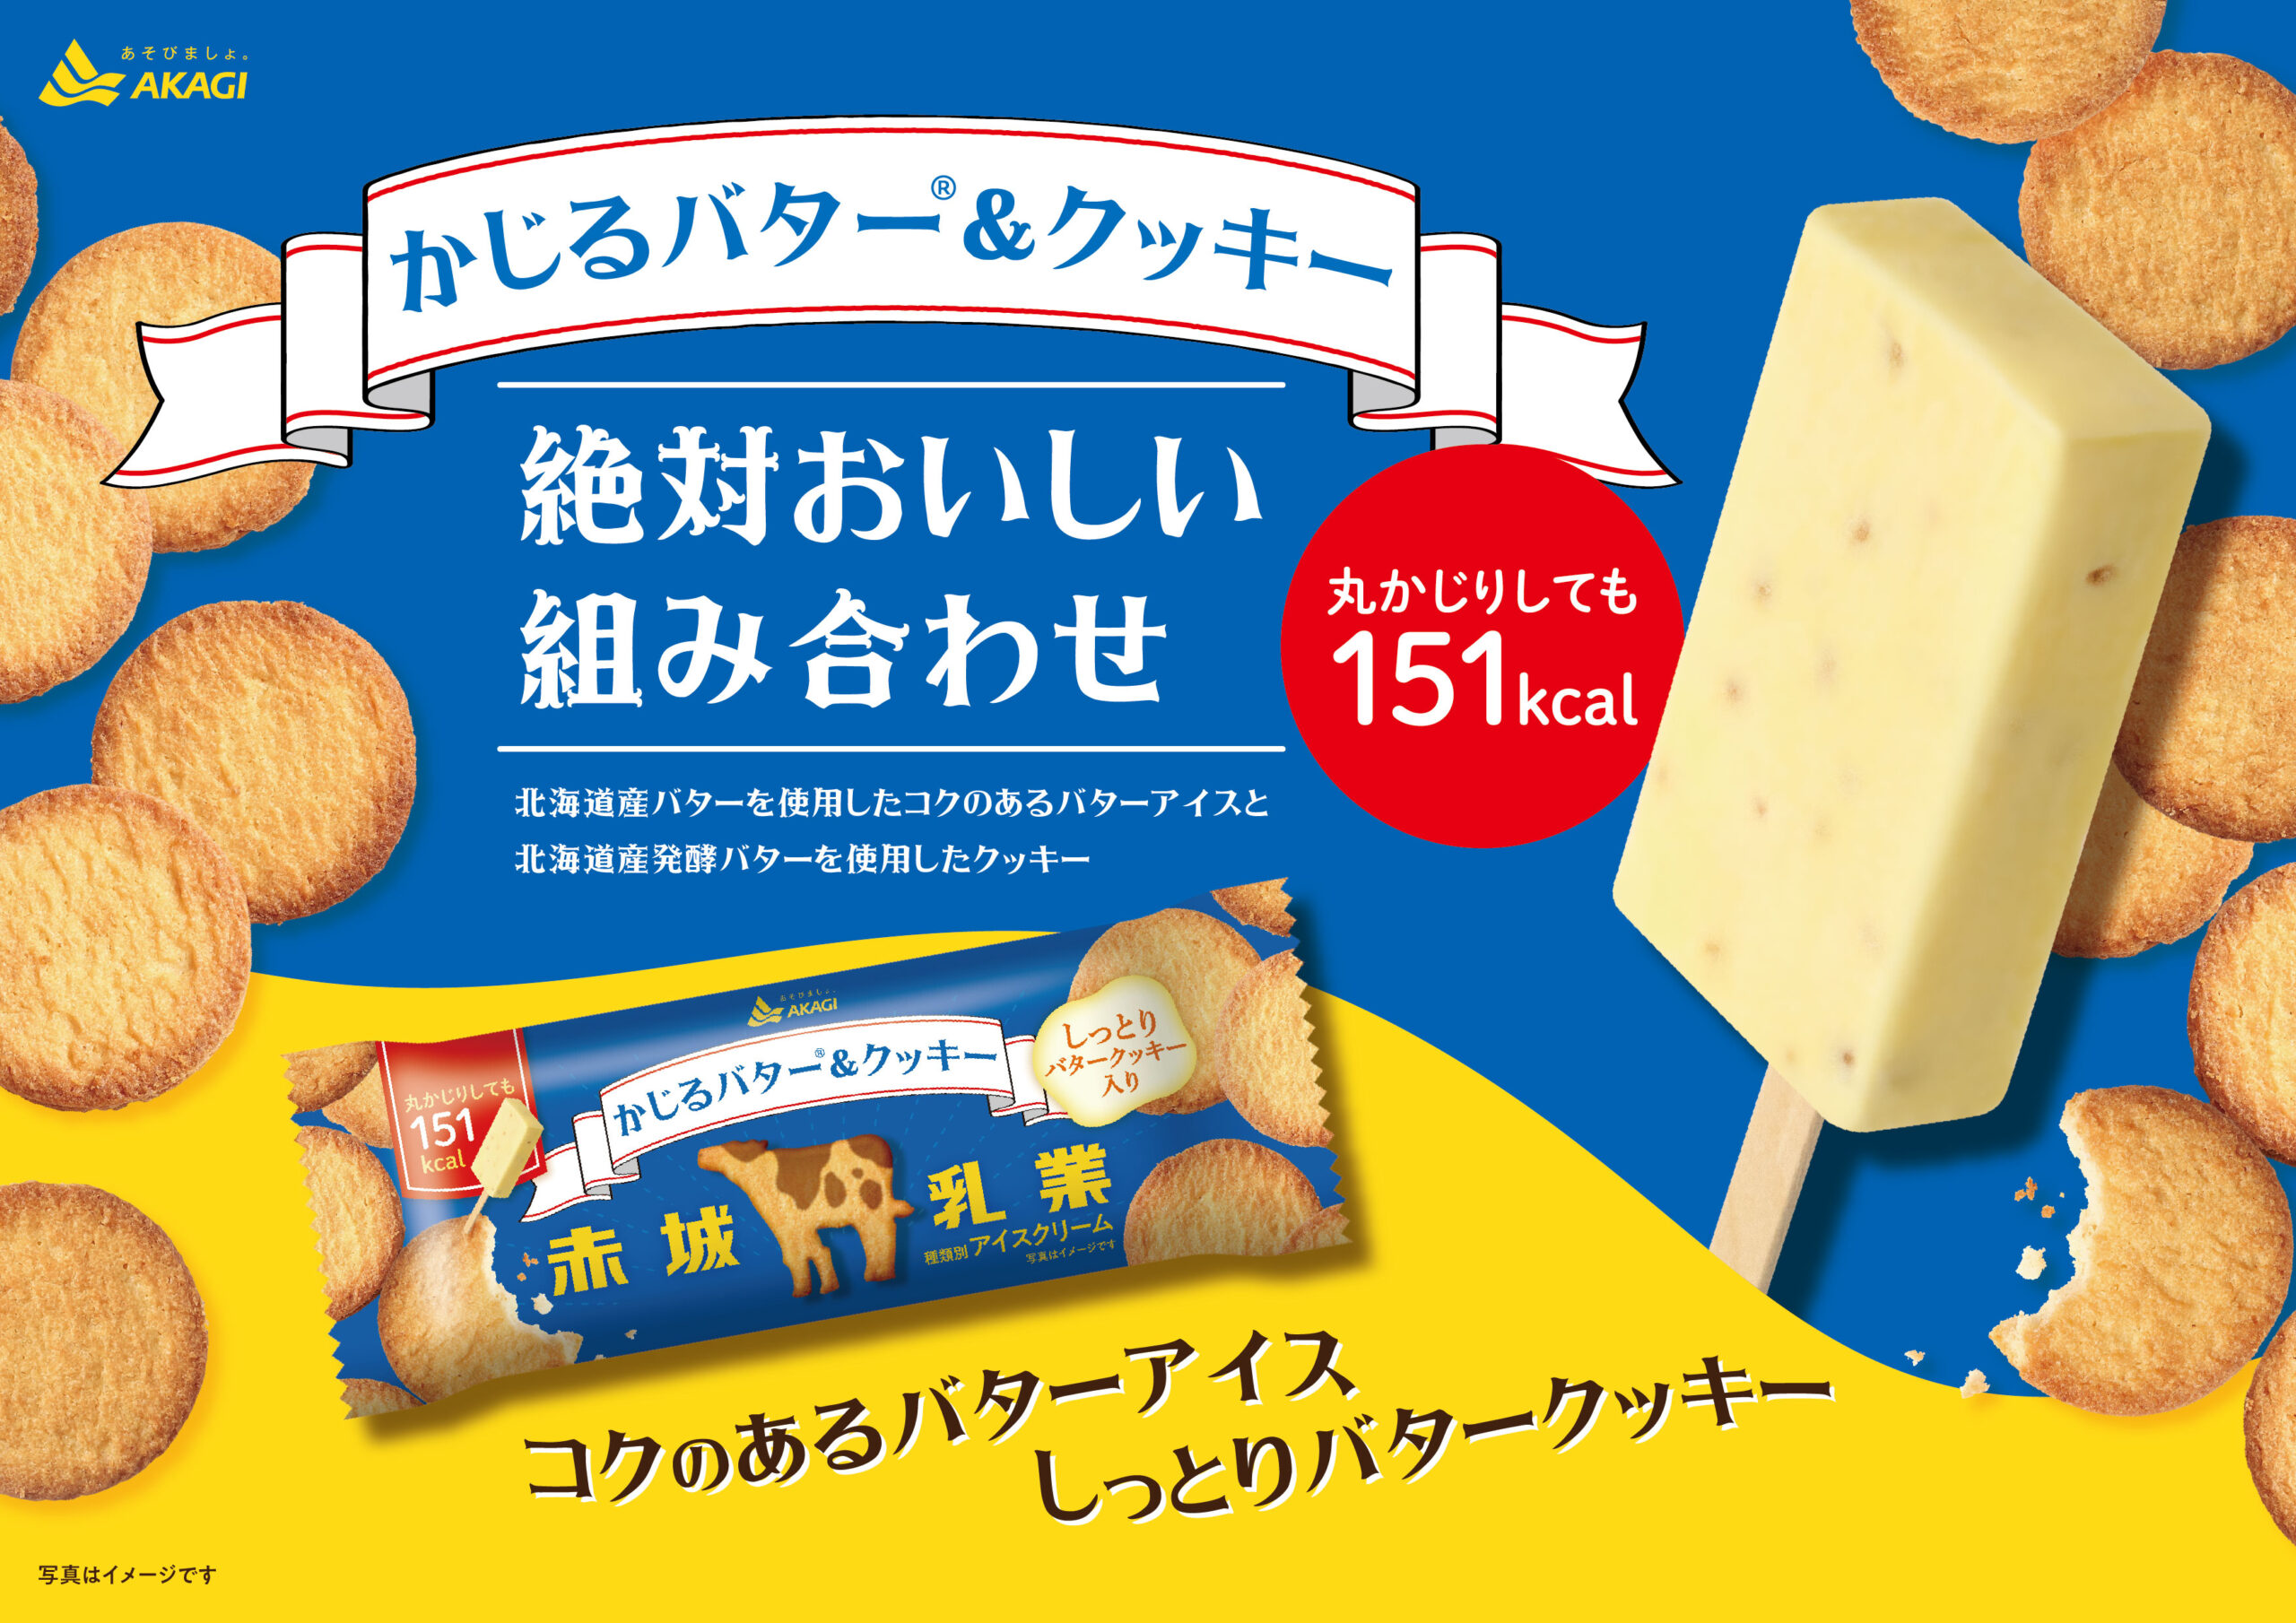 「かじるバターアイス」から王道の組み合わせ「バター×クッキー」が登場！北海道産発酵バターを使用したしっとりクッキー入り！発売記念でキャンペーン豪華2本立て！「かじるバター＆クッキー」